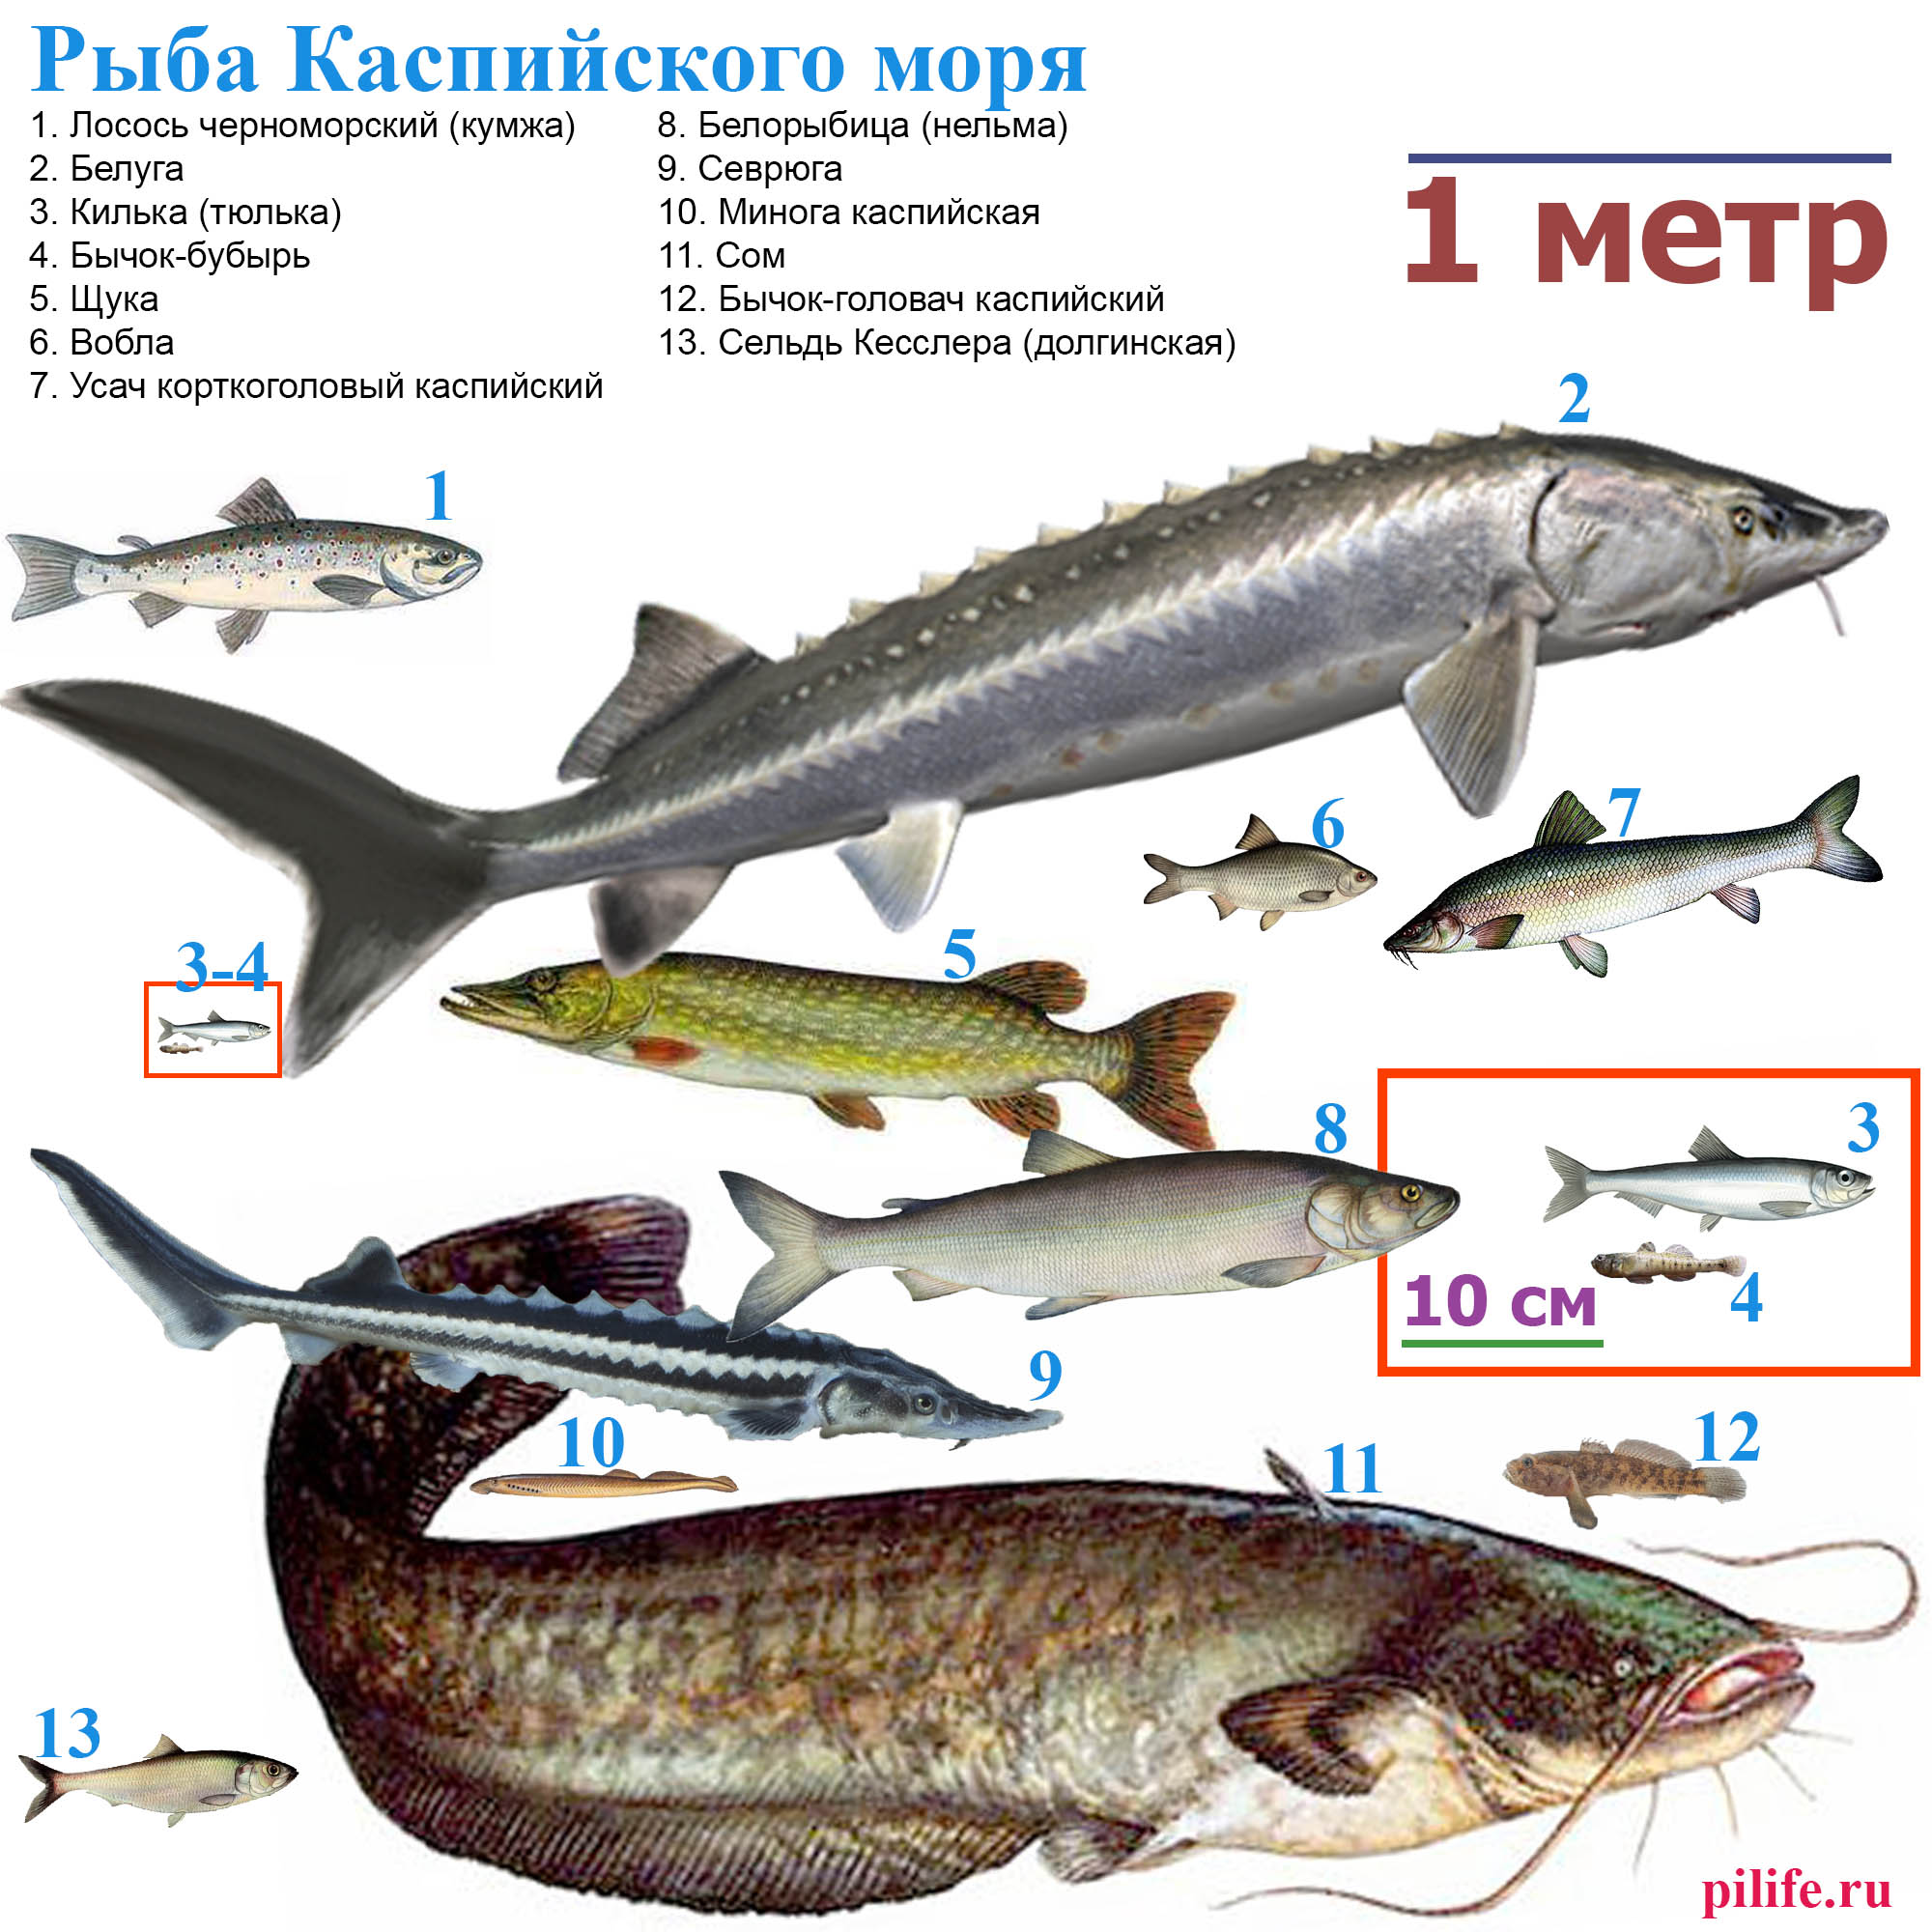 Рыбы Каспийского моря в масштабе.